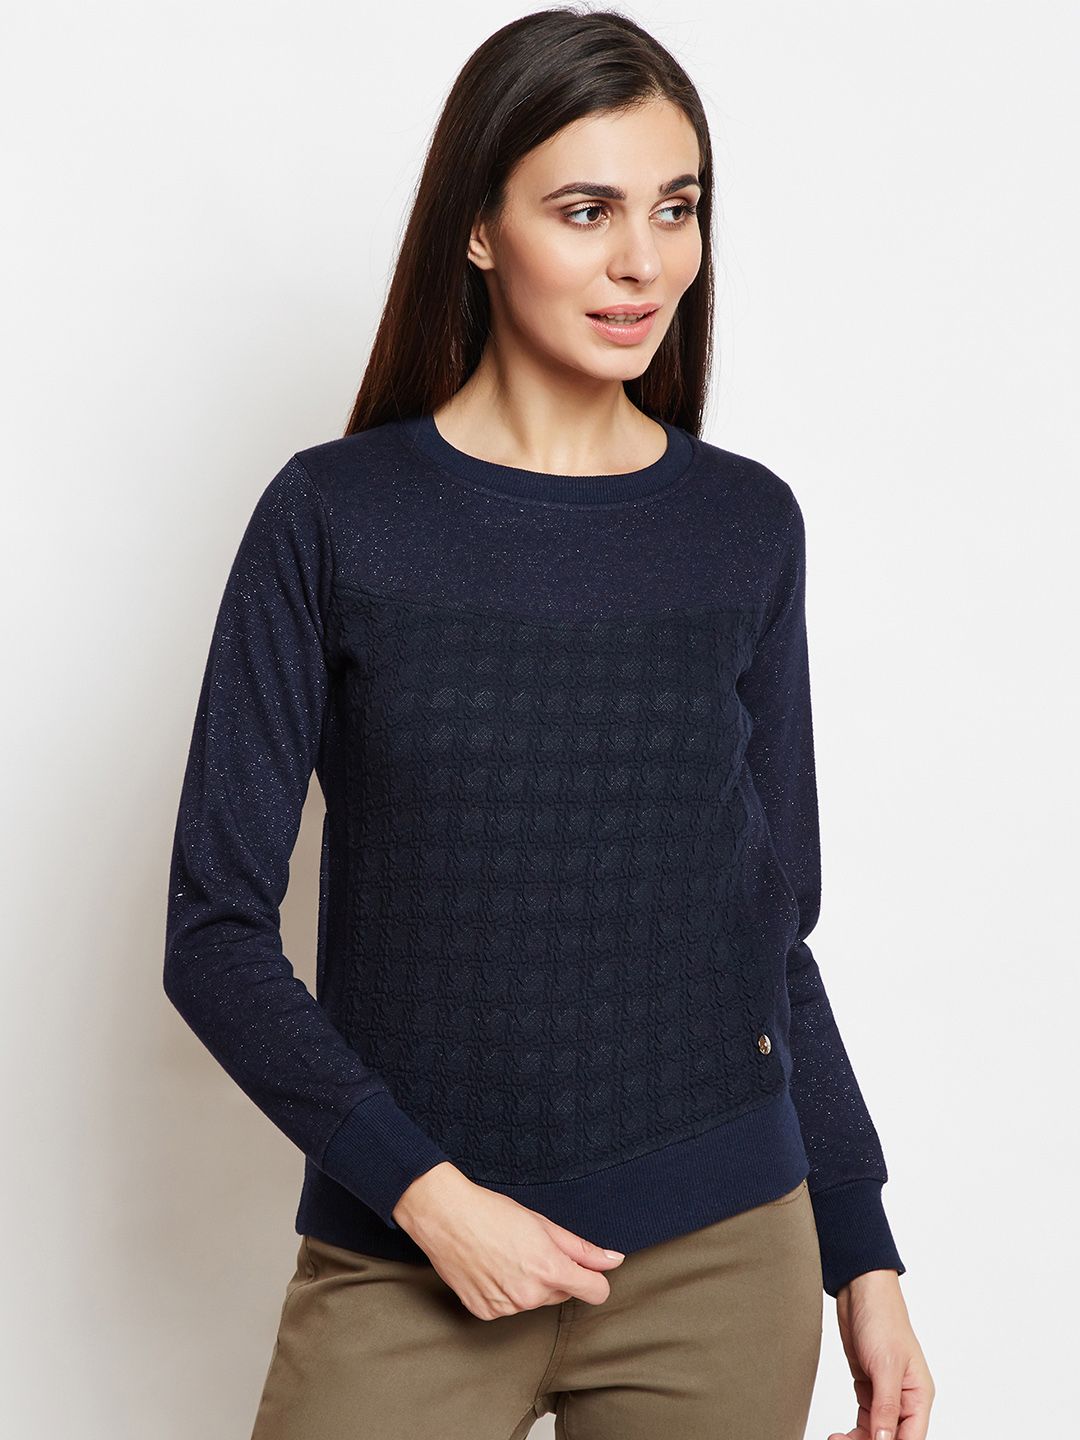 Taanz Women Navy Blue Self Design Sweatshirt Price in India